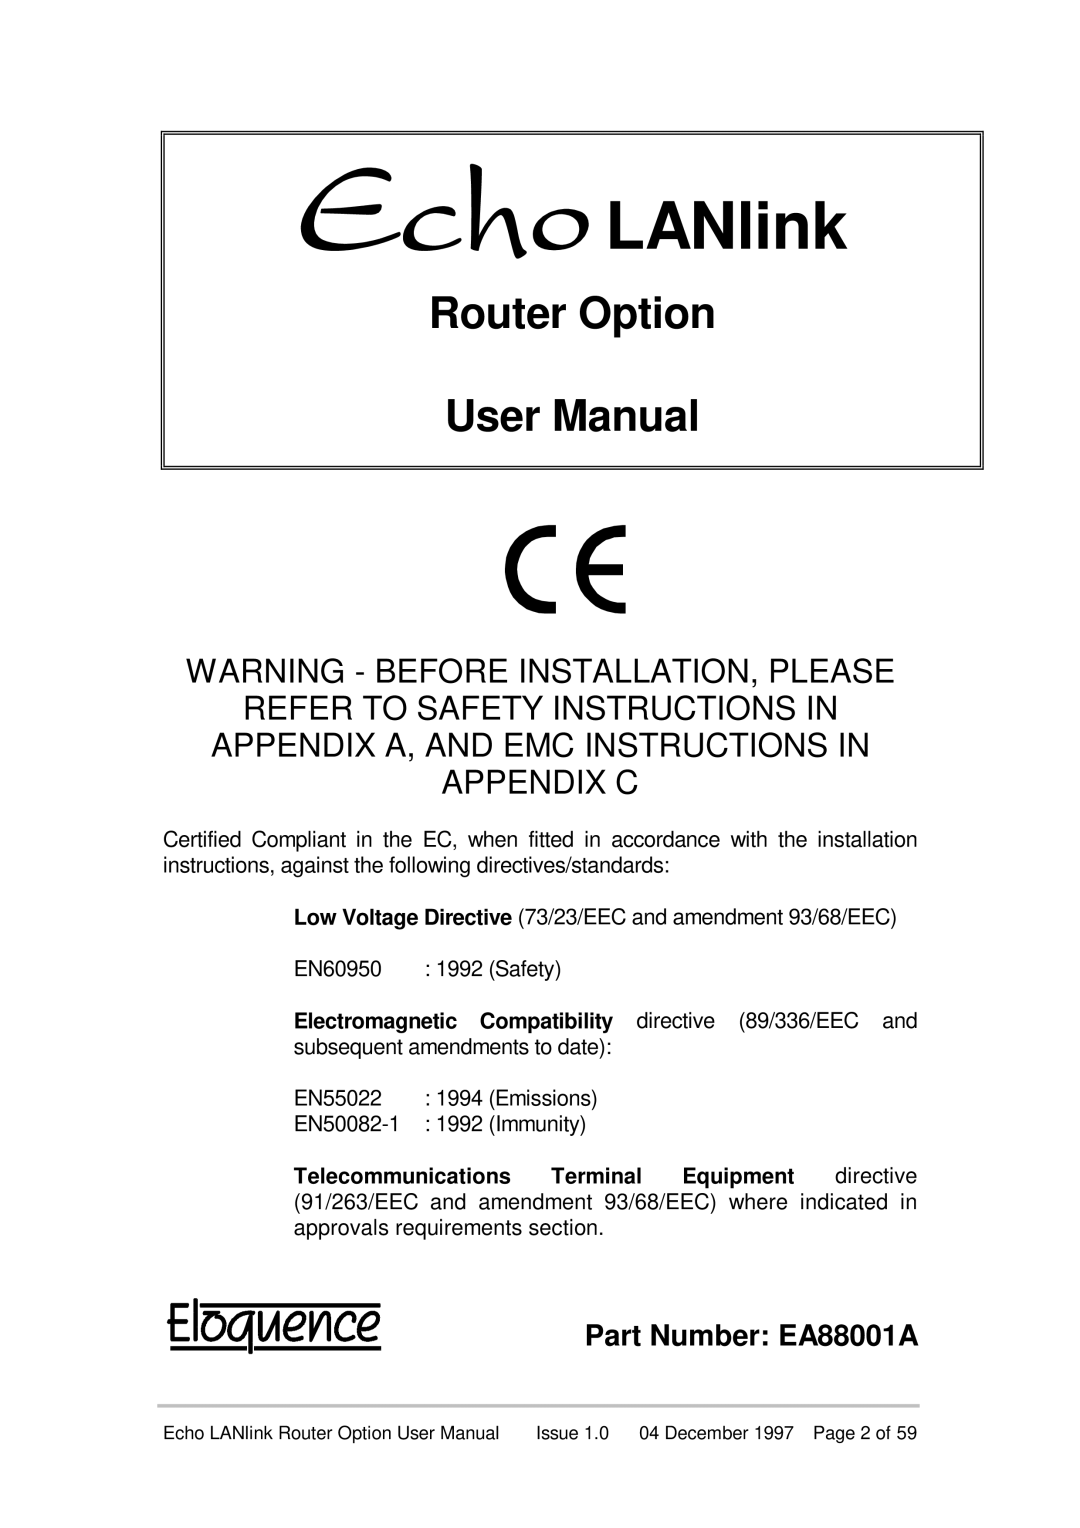 Echo EN55022 Router Option User Manual, Part Number EA88001A, 5SXLANlink, Appendix A, And Emc Instructions In Appendix C 